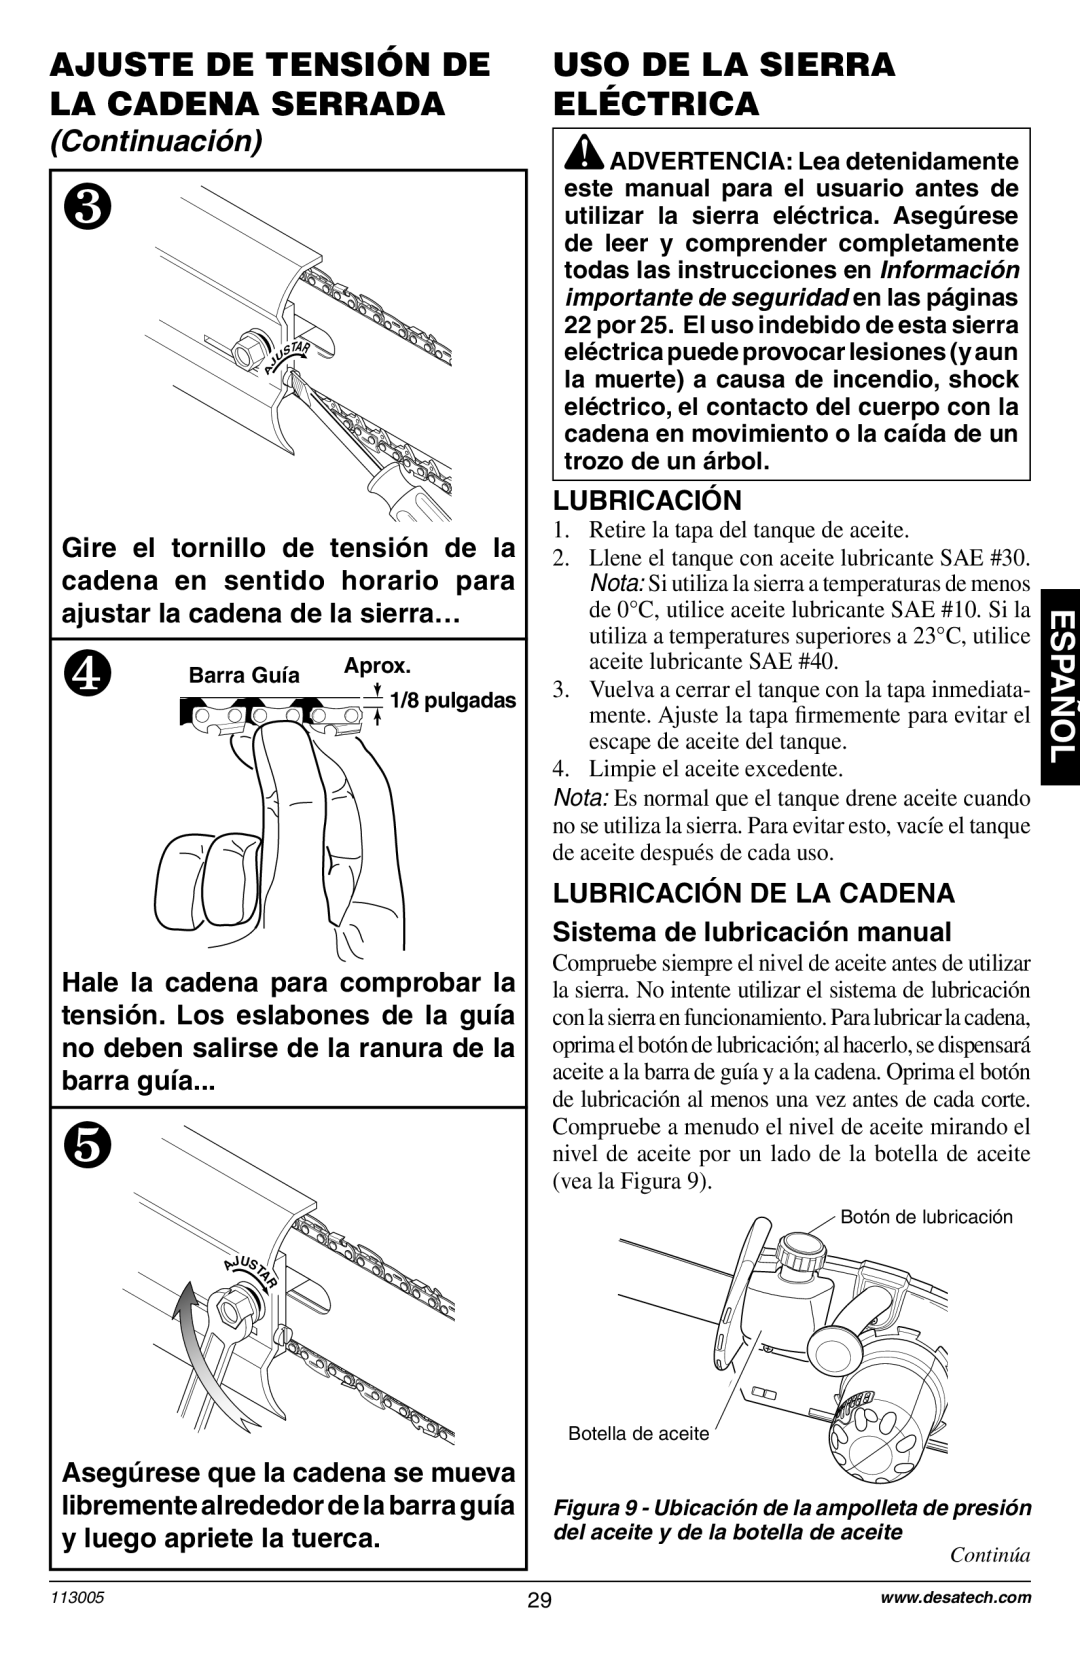 Remington Power Tools Electric Chain Saw Uso De La Sierra Eléctrica, Lubricación, Ajuste De Tensión De La Cadena Serrada 